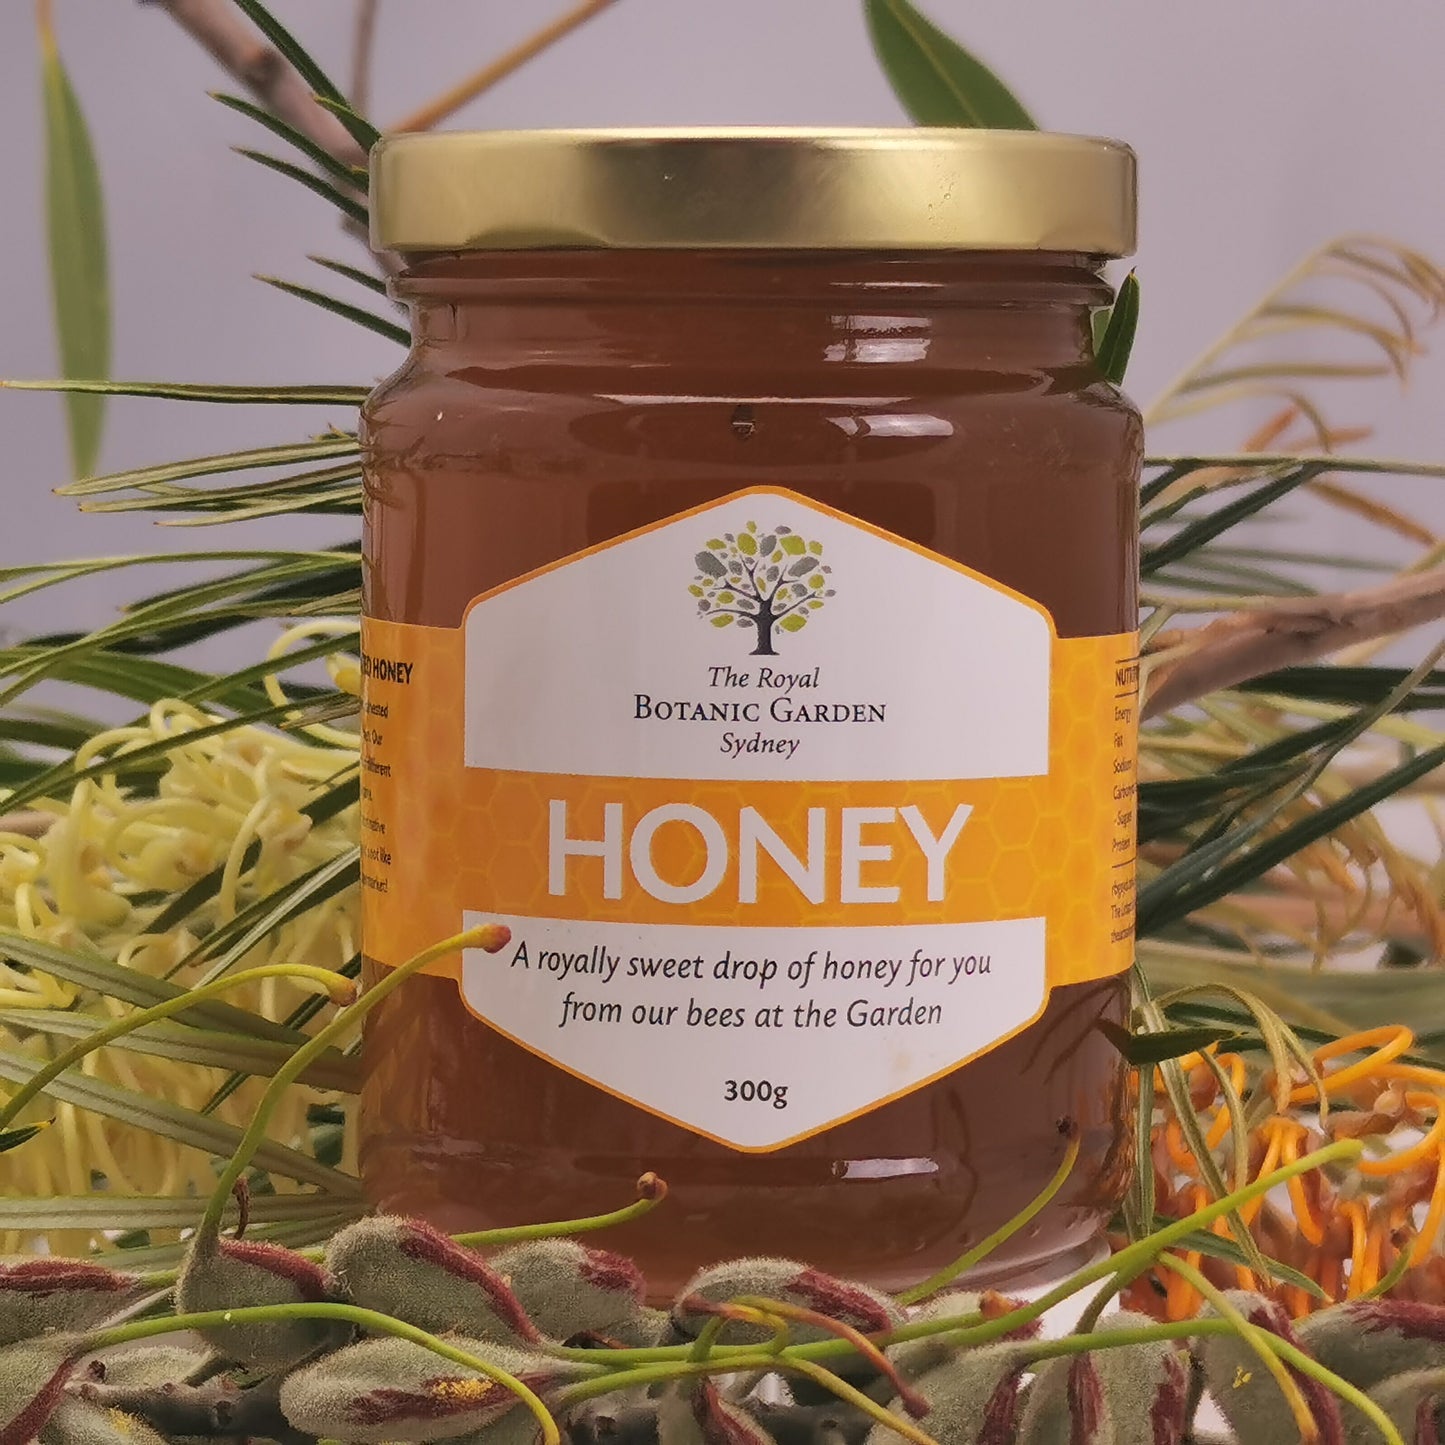 The Royal Botanic Garden Sydney honey